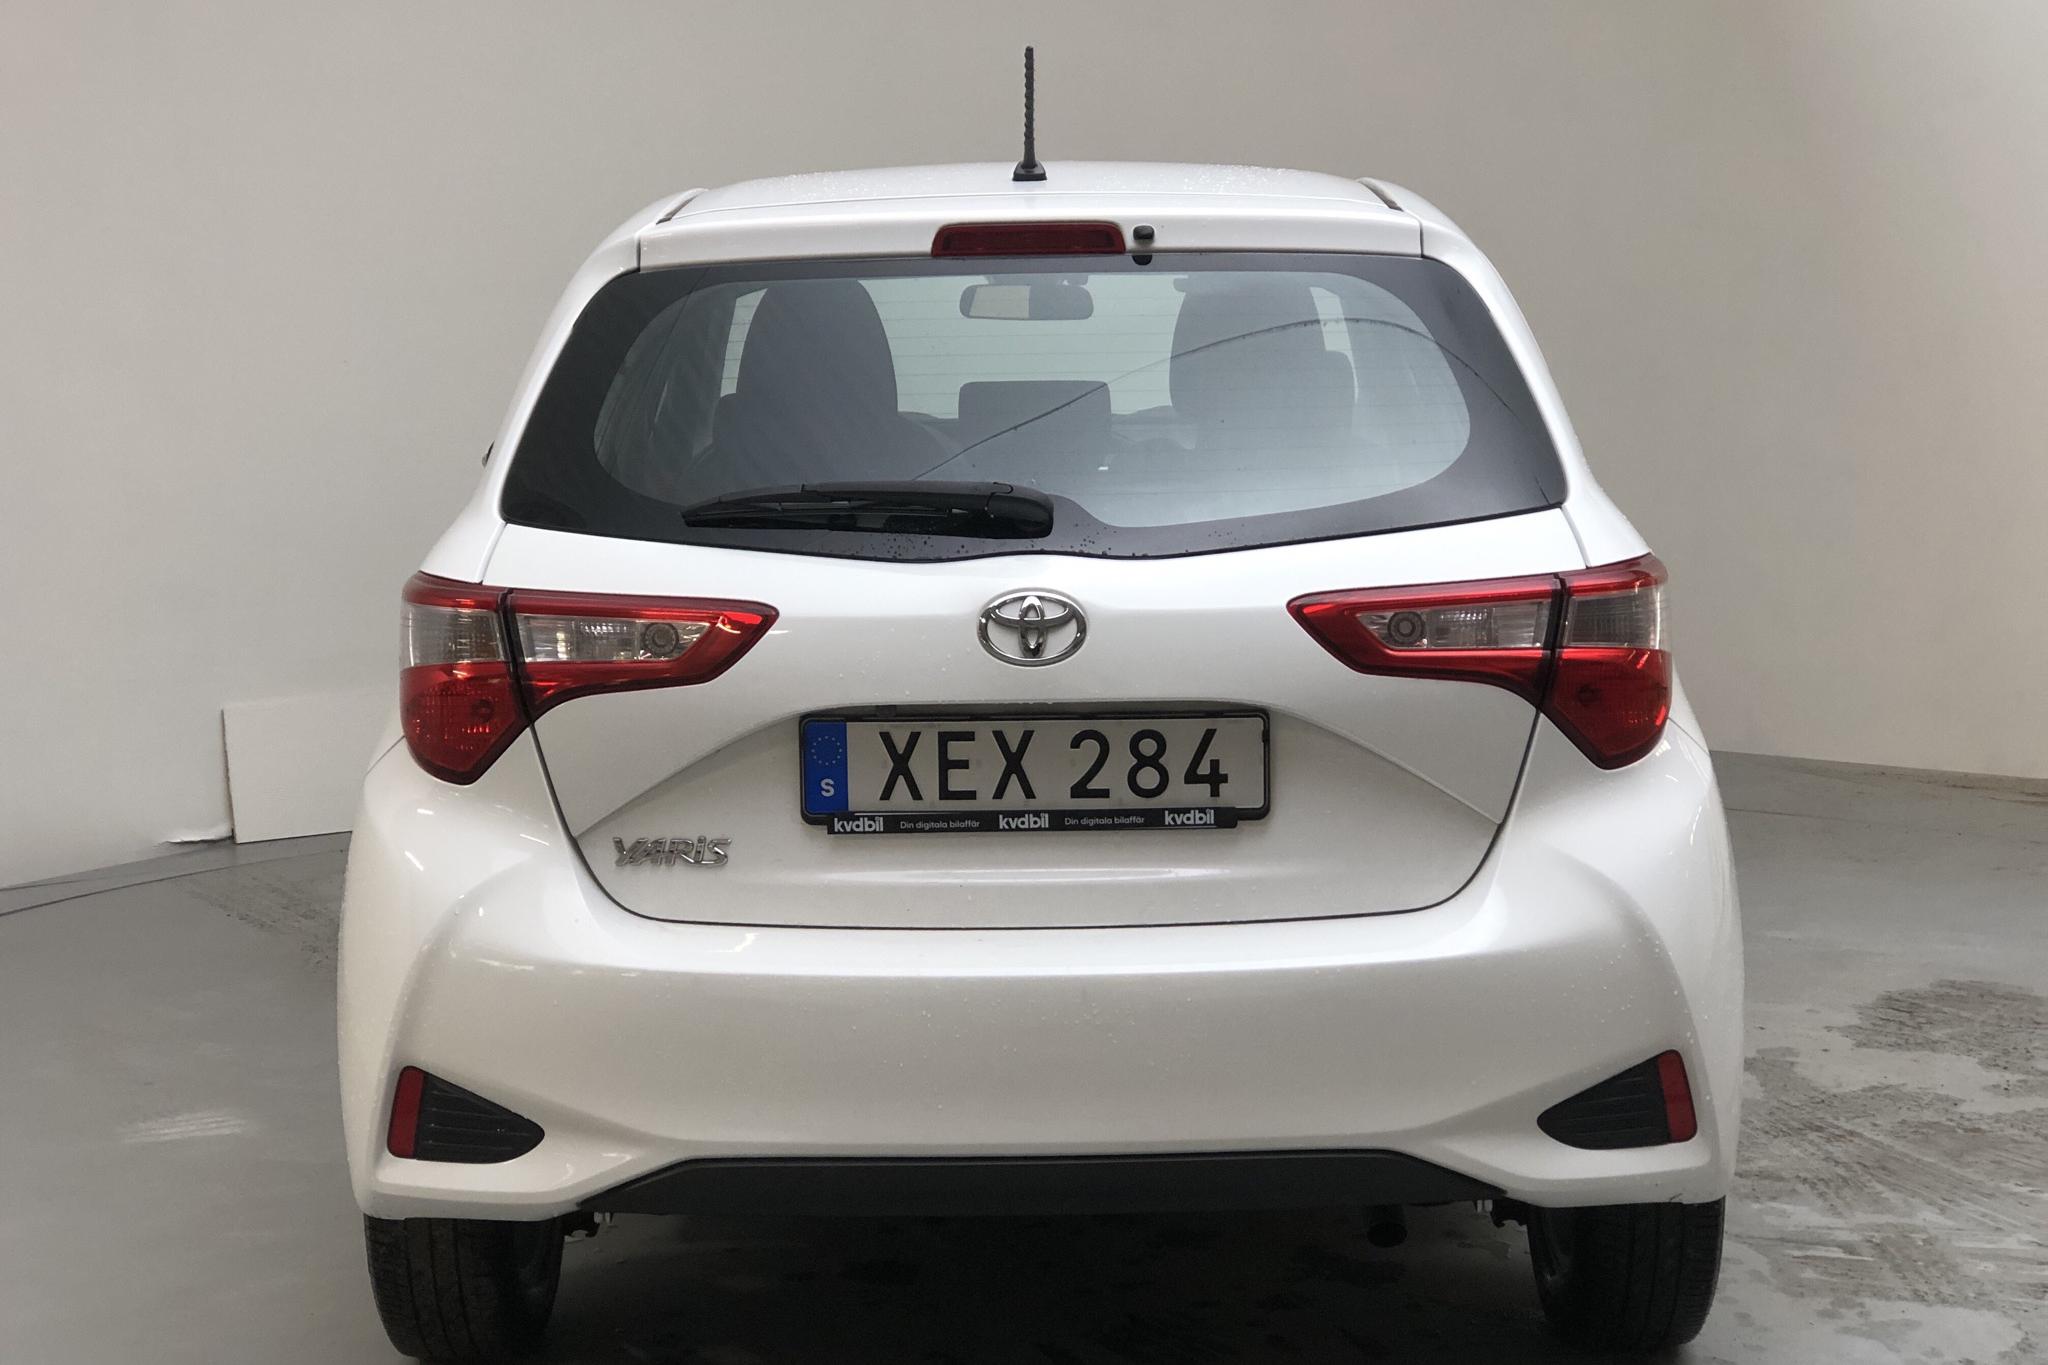 Toyota Yaris 1.5 5dr (111hk) - 6 163 mil - Automat - vit - 2018